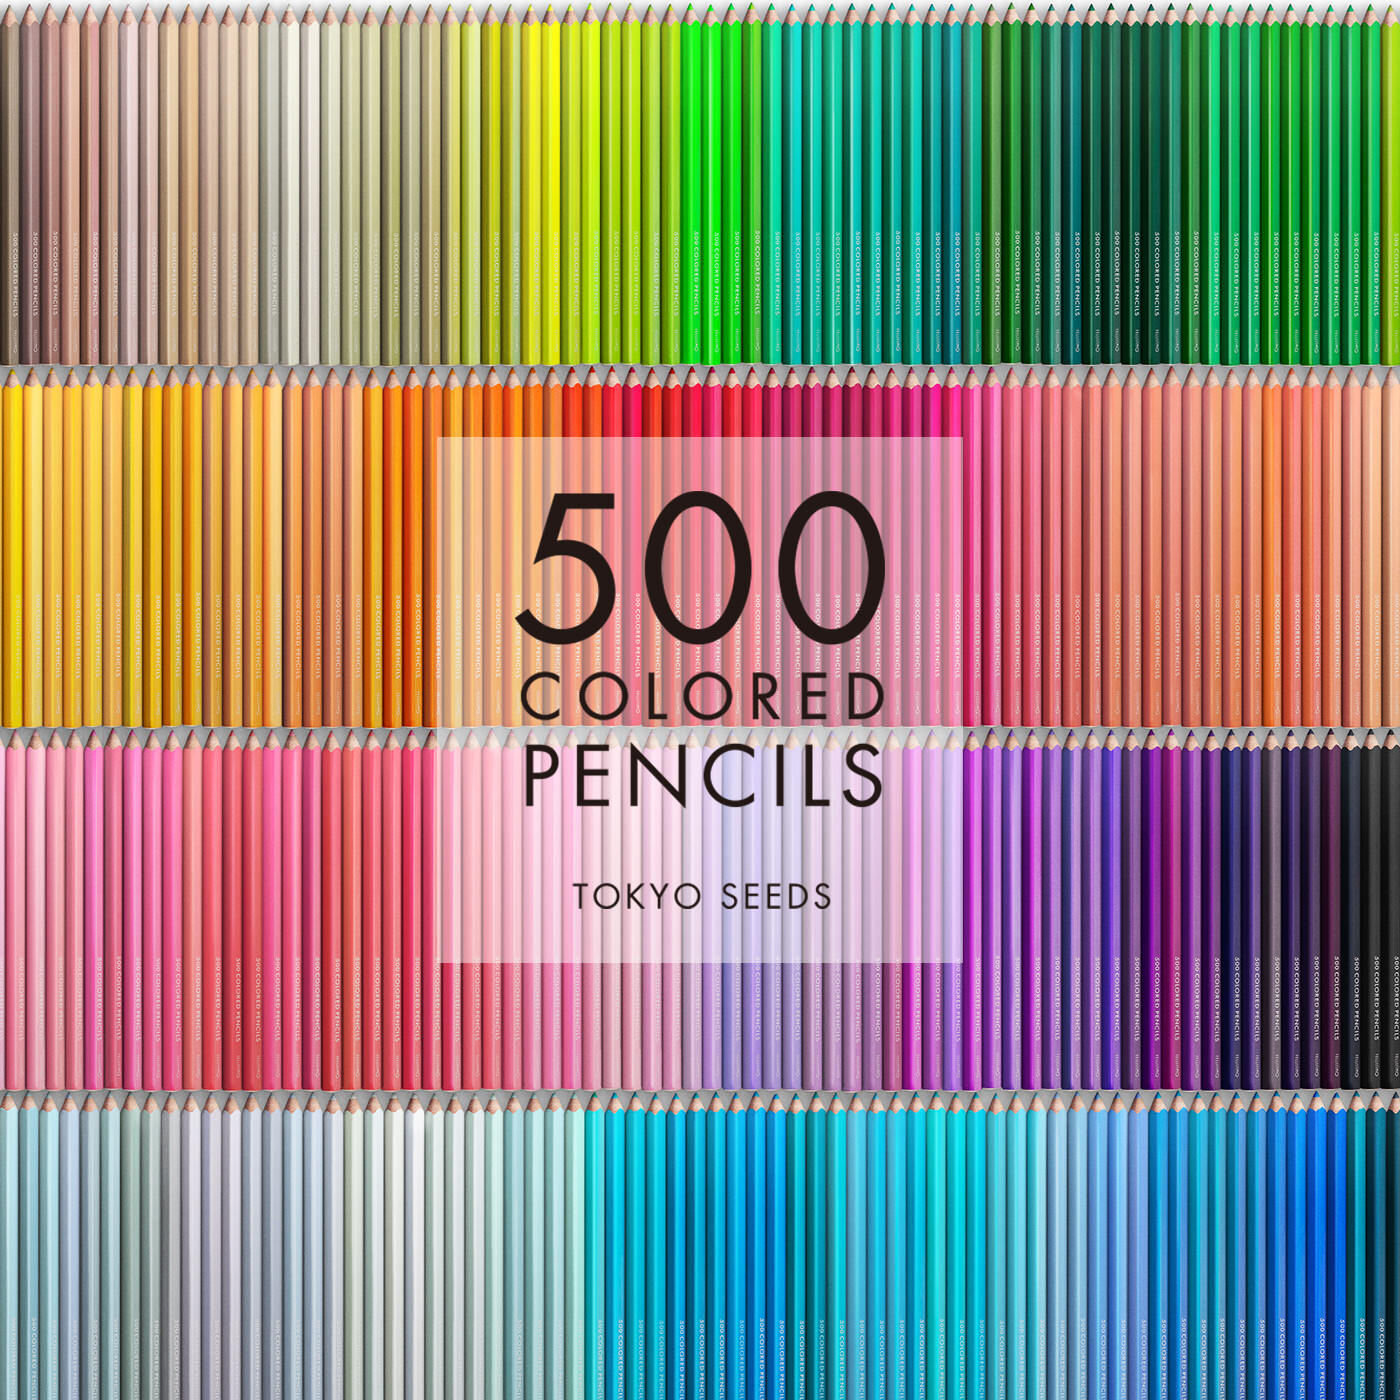 Real Stock|【68/500 BEACHSIDE PALM】500色の色えんぴつ TOKYO SEEDS|1992年、世界初の「500色」という膨大な色数の色えんぴつが誕生して以来、その販売数は発売当初から合わせると、世界55ヵ国10万セット以上。今回、メイド・イン・ジャパンにこだわり、すべてが新しく生まれ変わって登場しました。